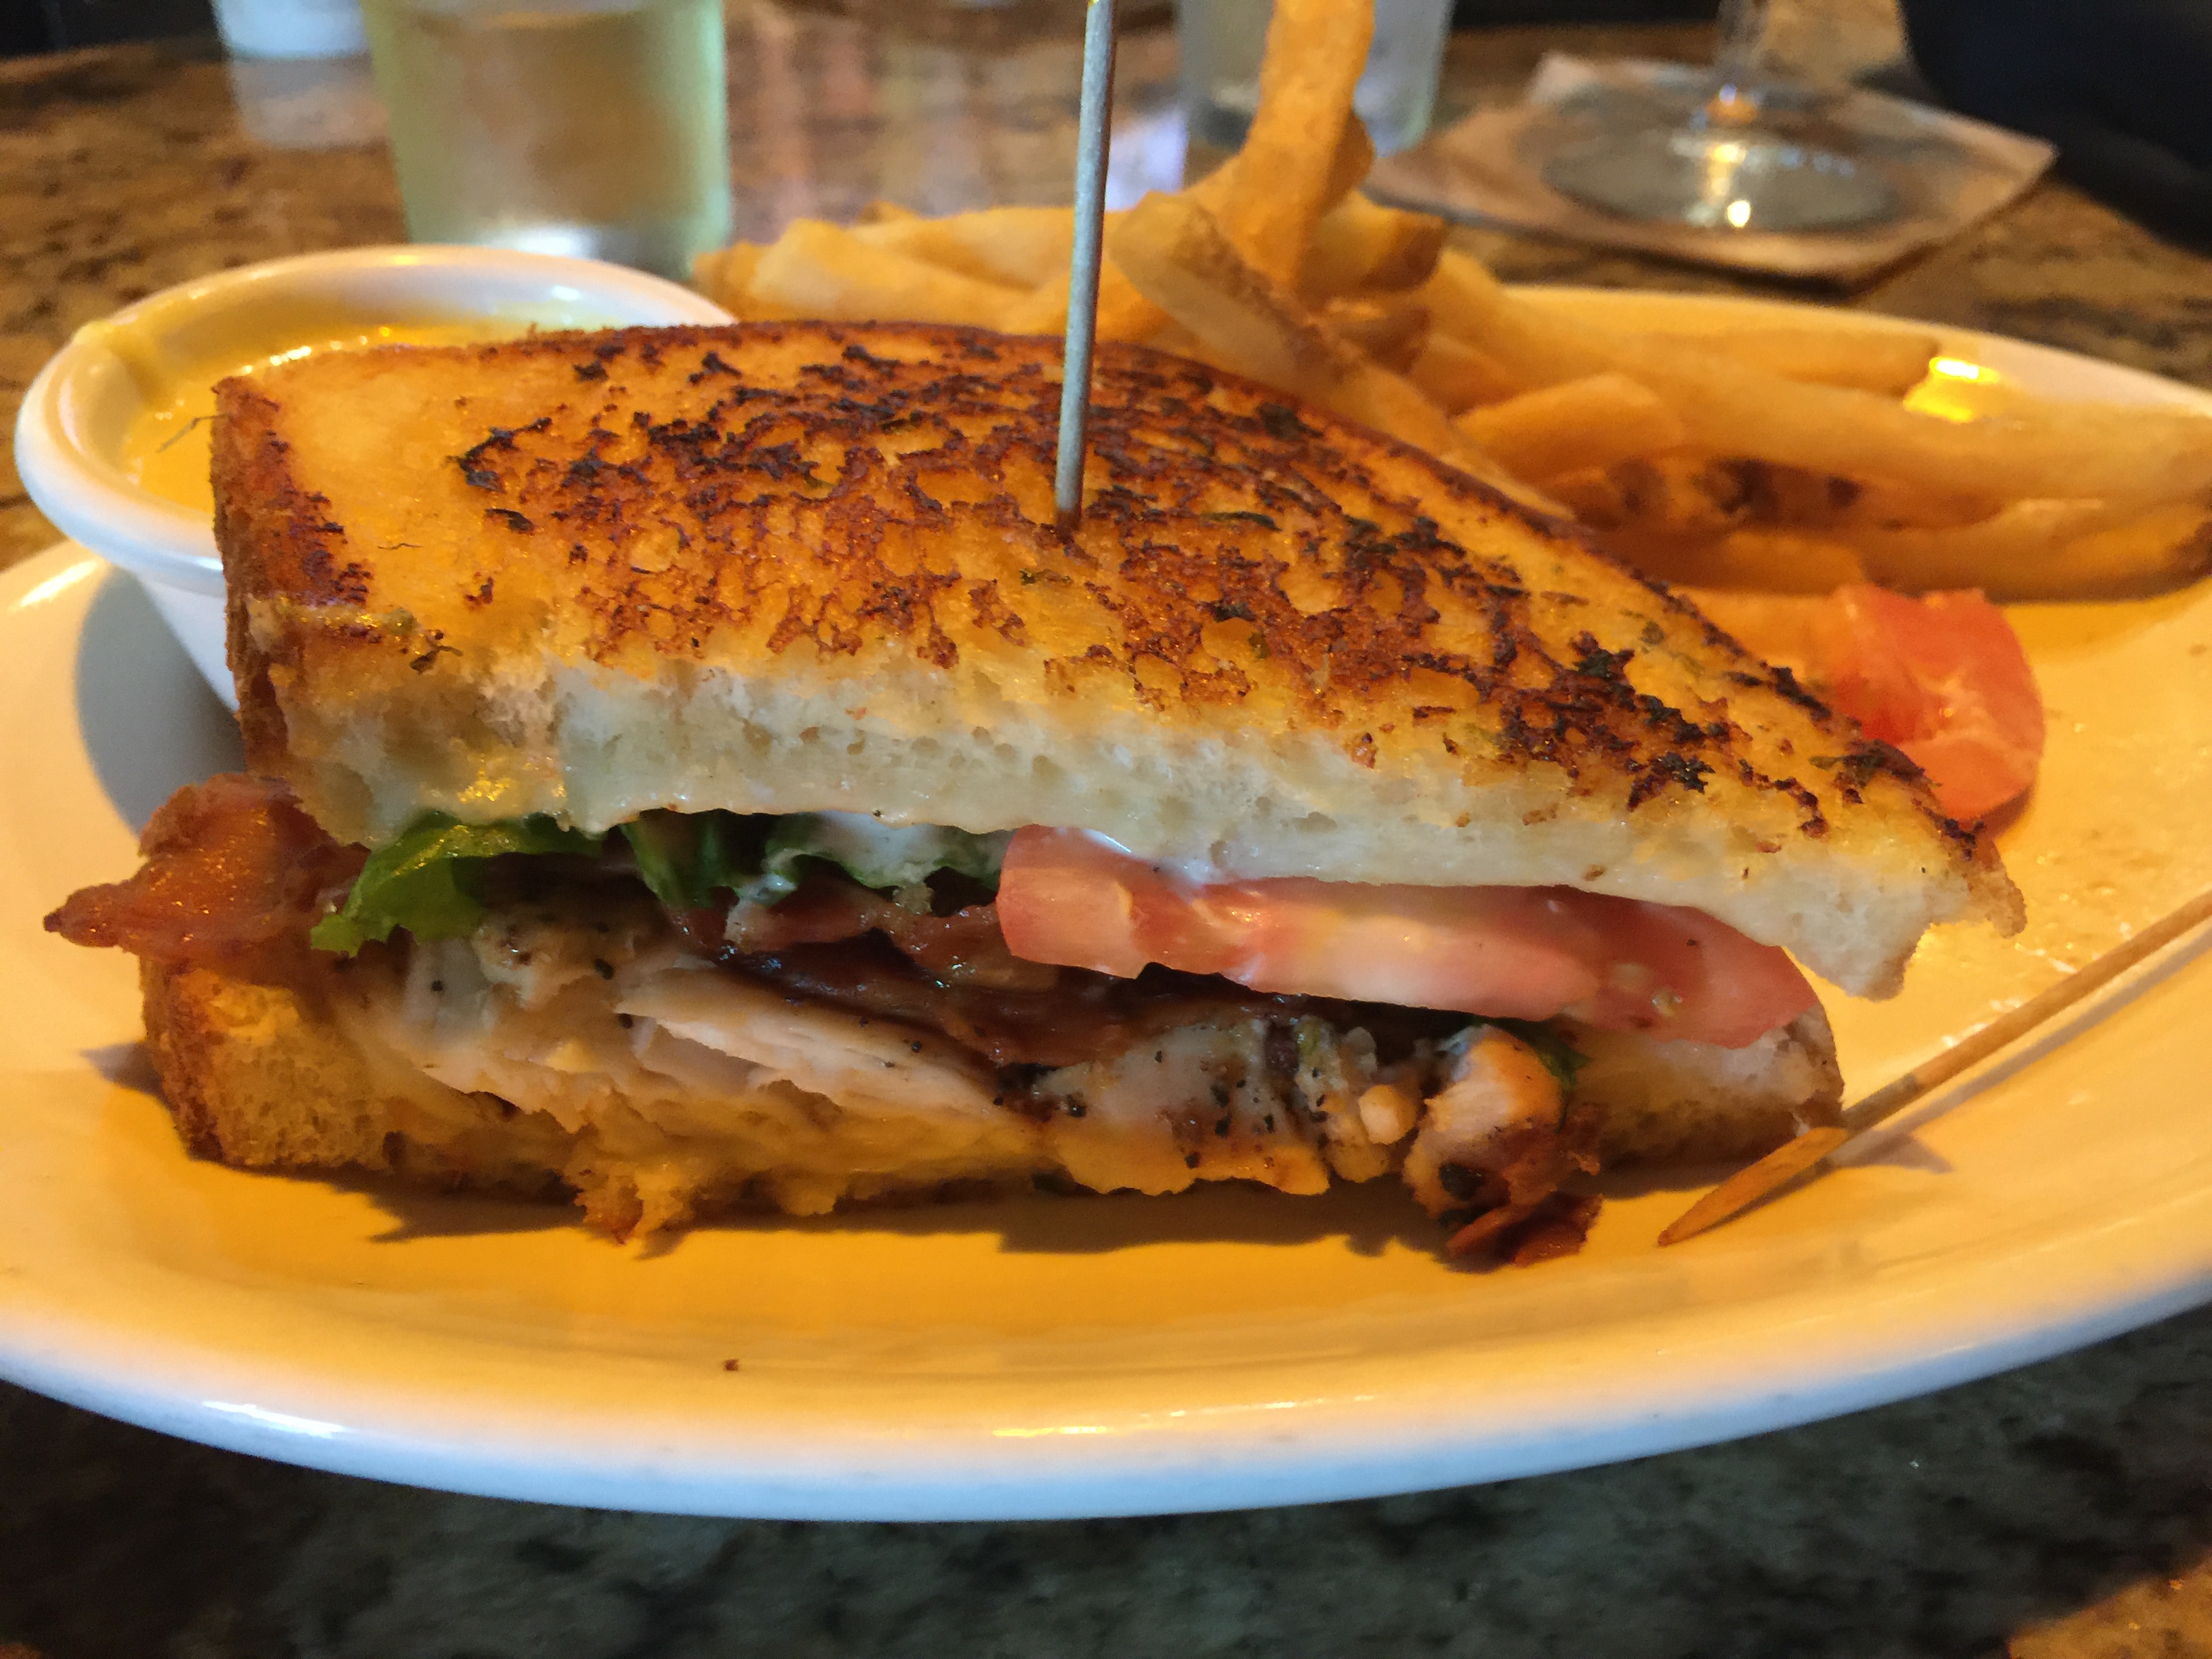  California club sandwich 